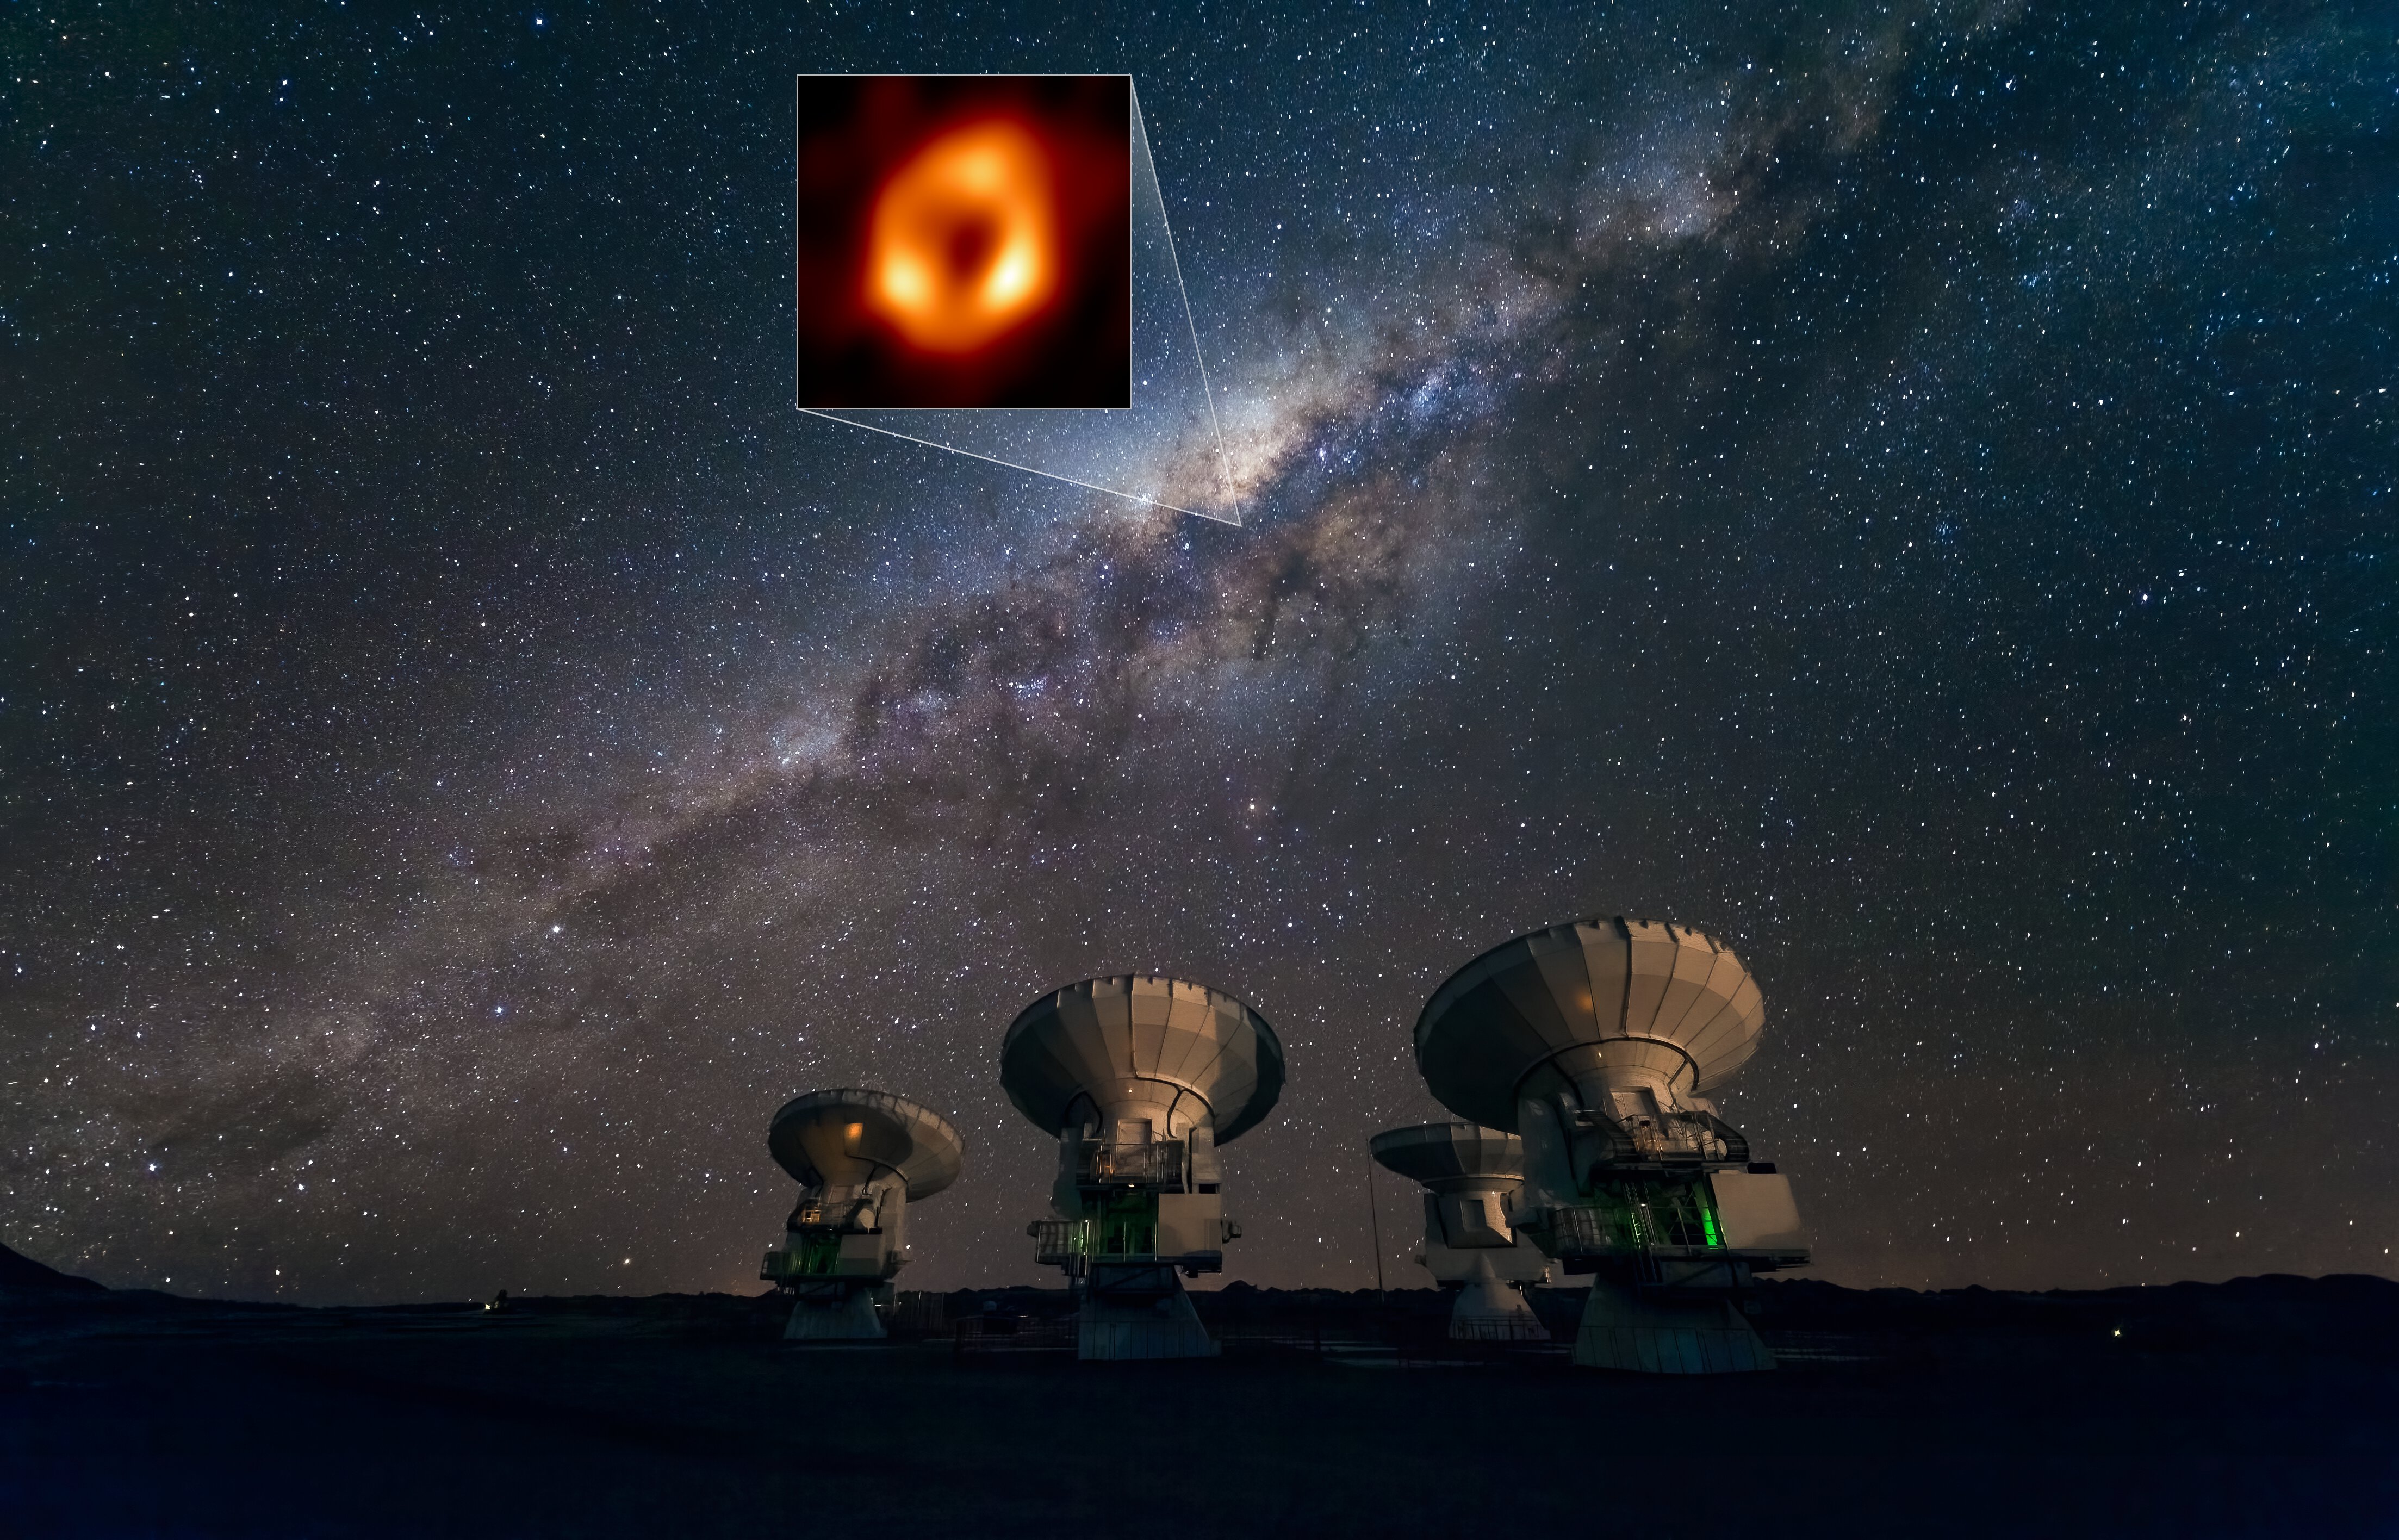 ALMA-Via-Lattea-SgrA* - L’immagine di Sagittarius A* (Sgr A*), il buco nero supermassiccio nel cuore della Via Lattea sopra le antenne di ALMA, l’Atacama Large Millimeter/submillimeter Array, nel deserto di Atacama in Cile. ALMA è il più potente radiotelescopio esistente al mondo e un nodo cruciale dell’Event Horizon Telescope (EHT). - 